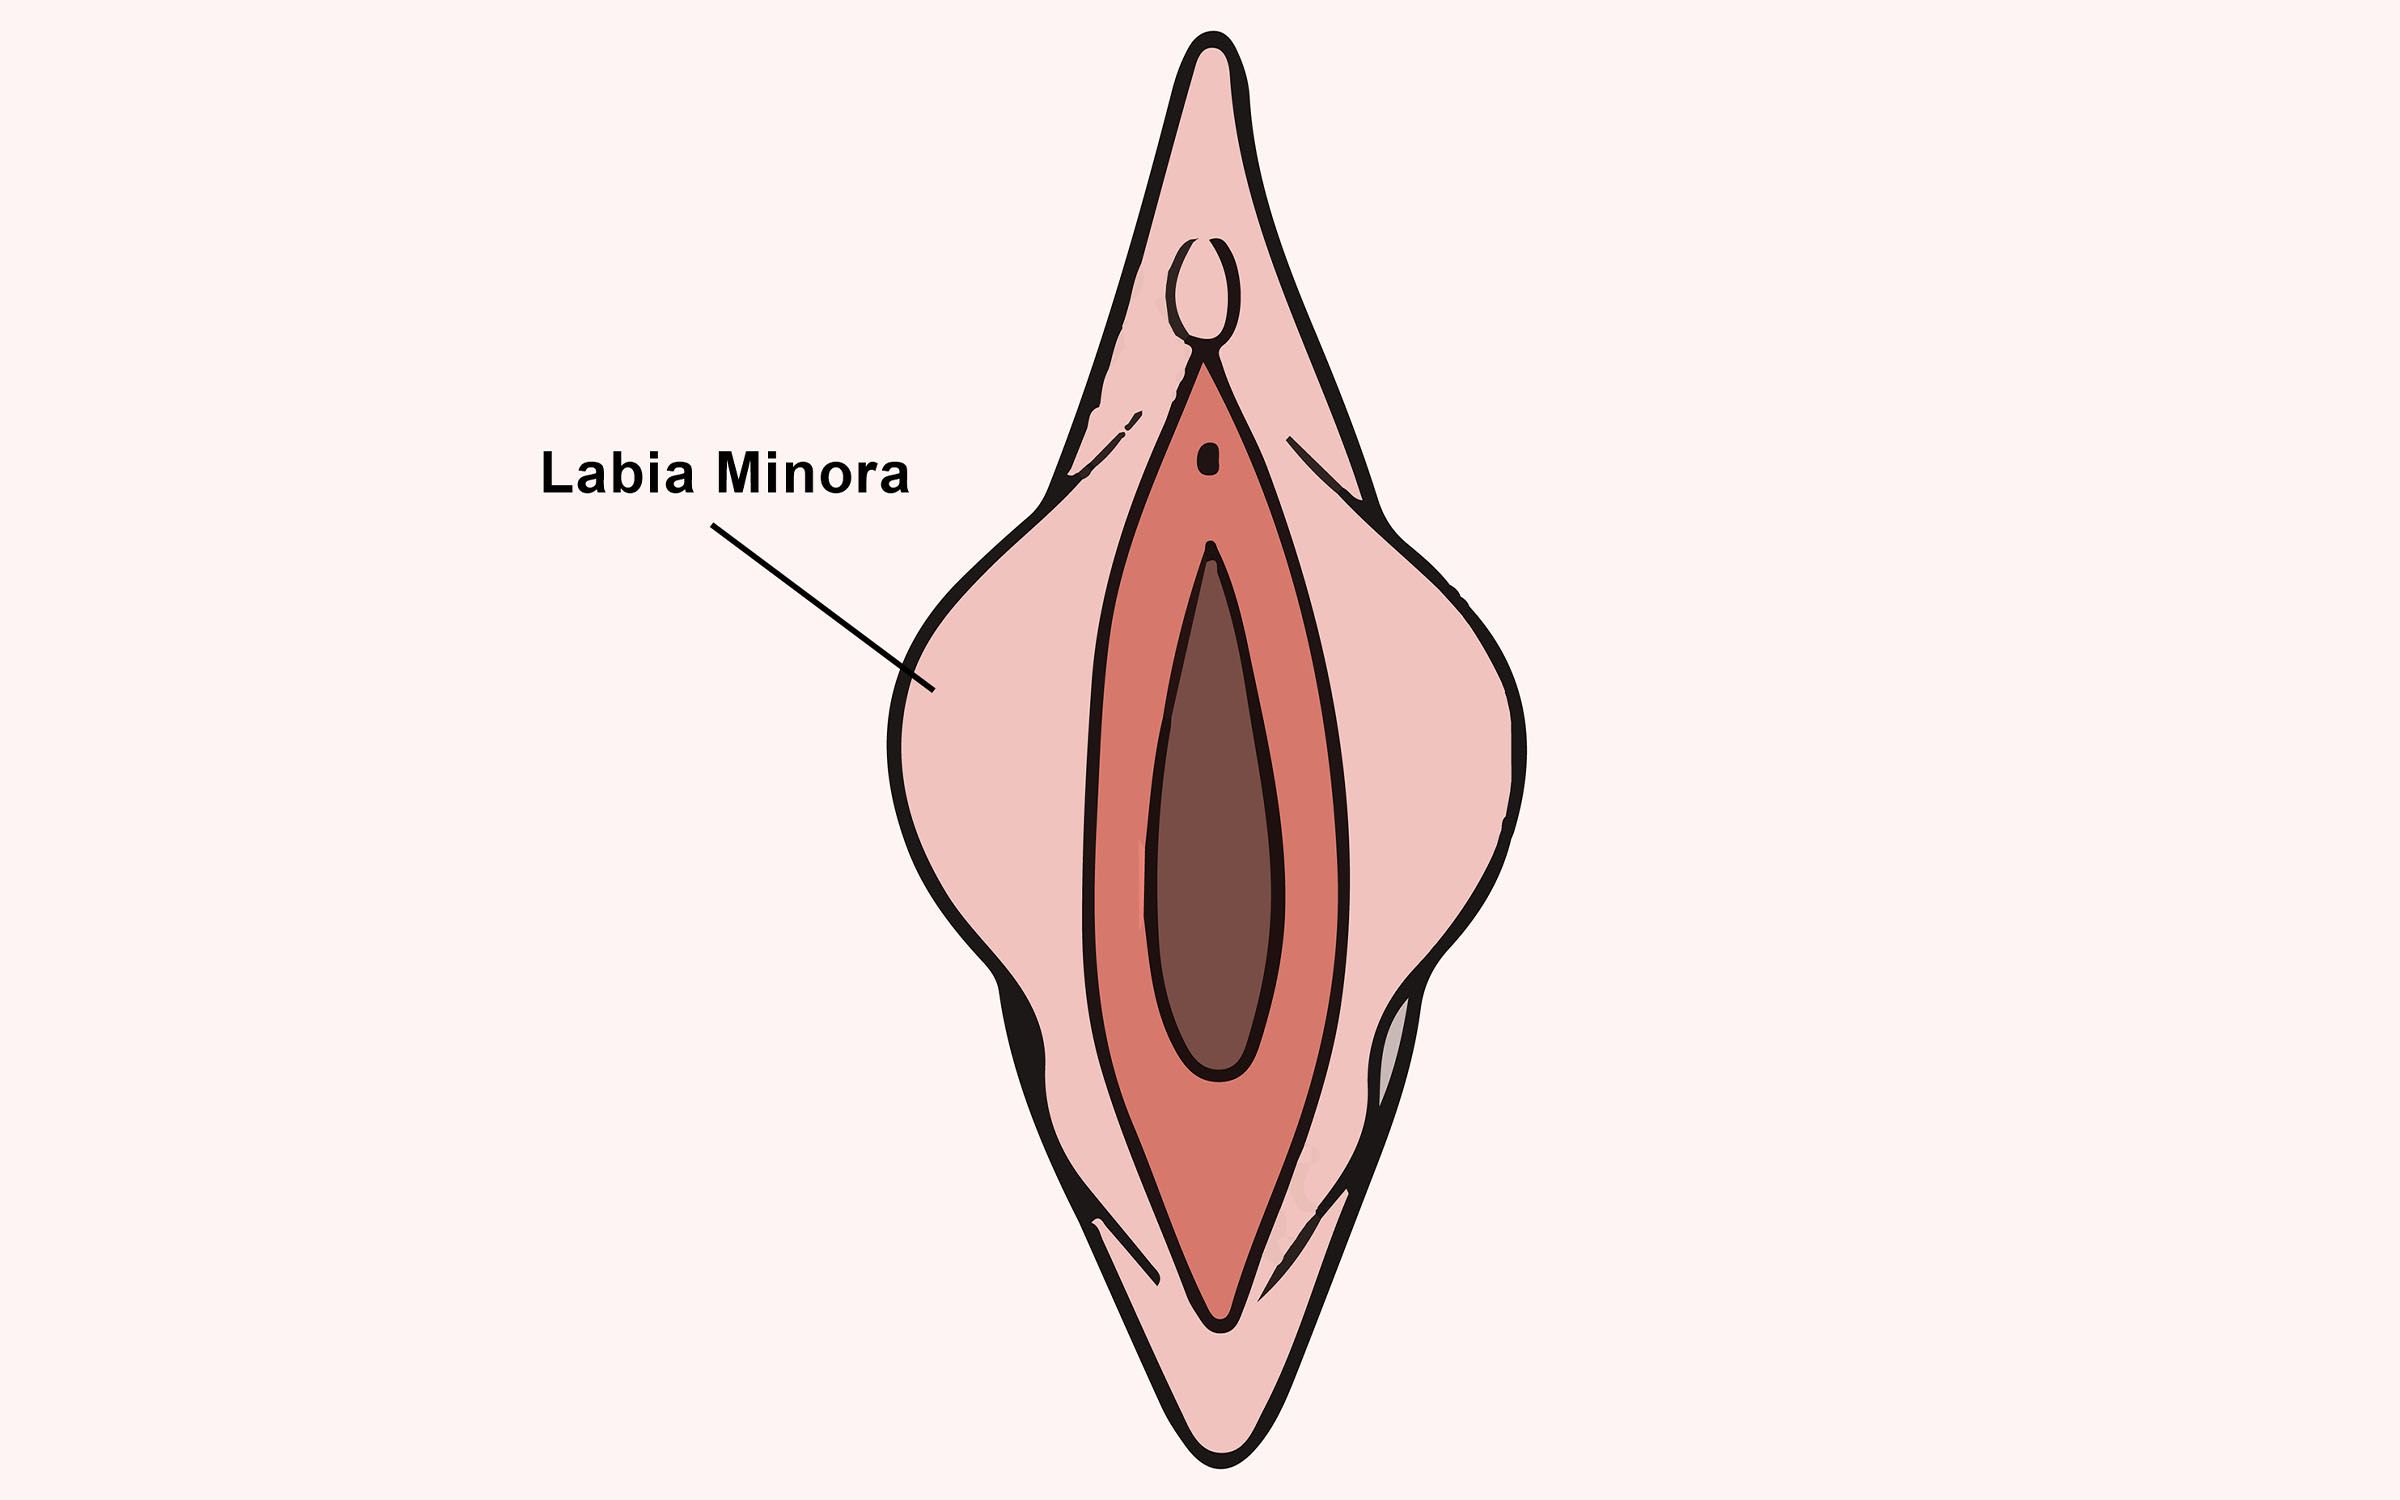 Imagen cercana de los labios menores de la vagina